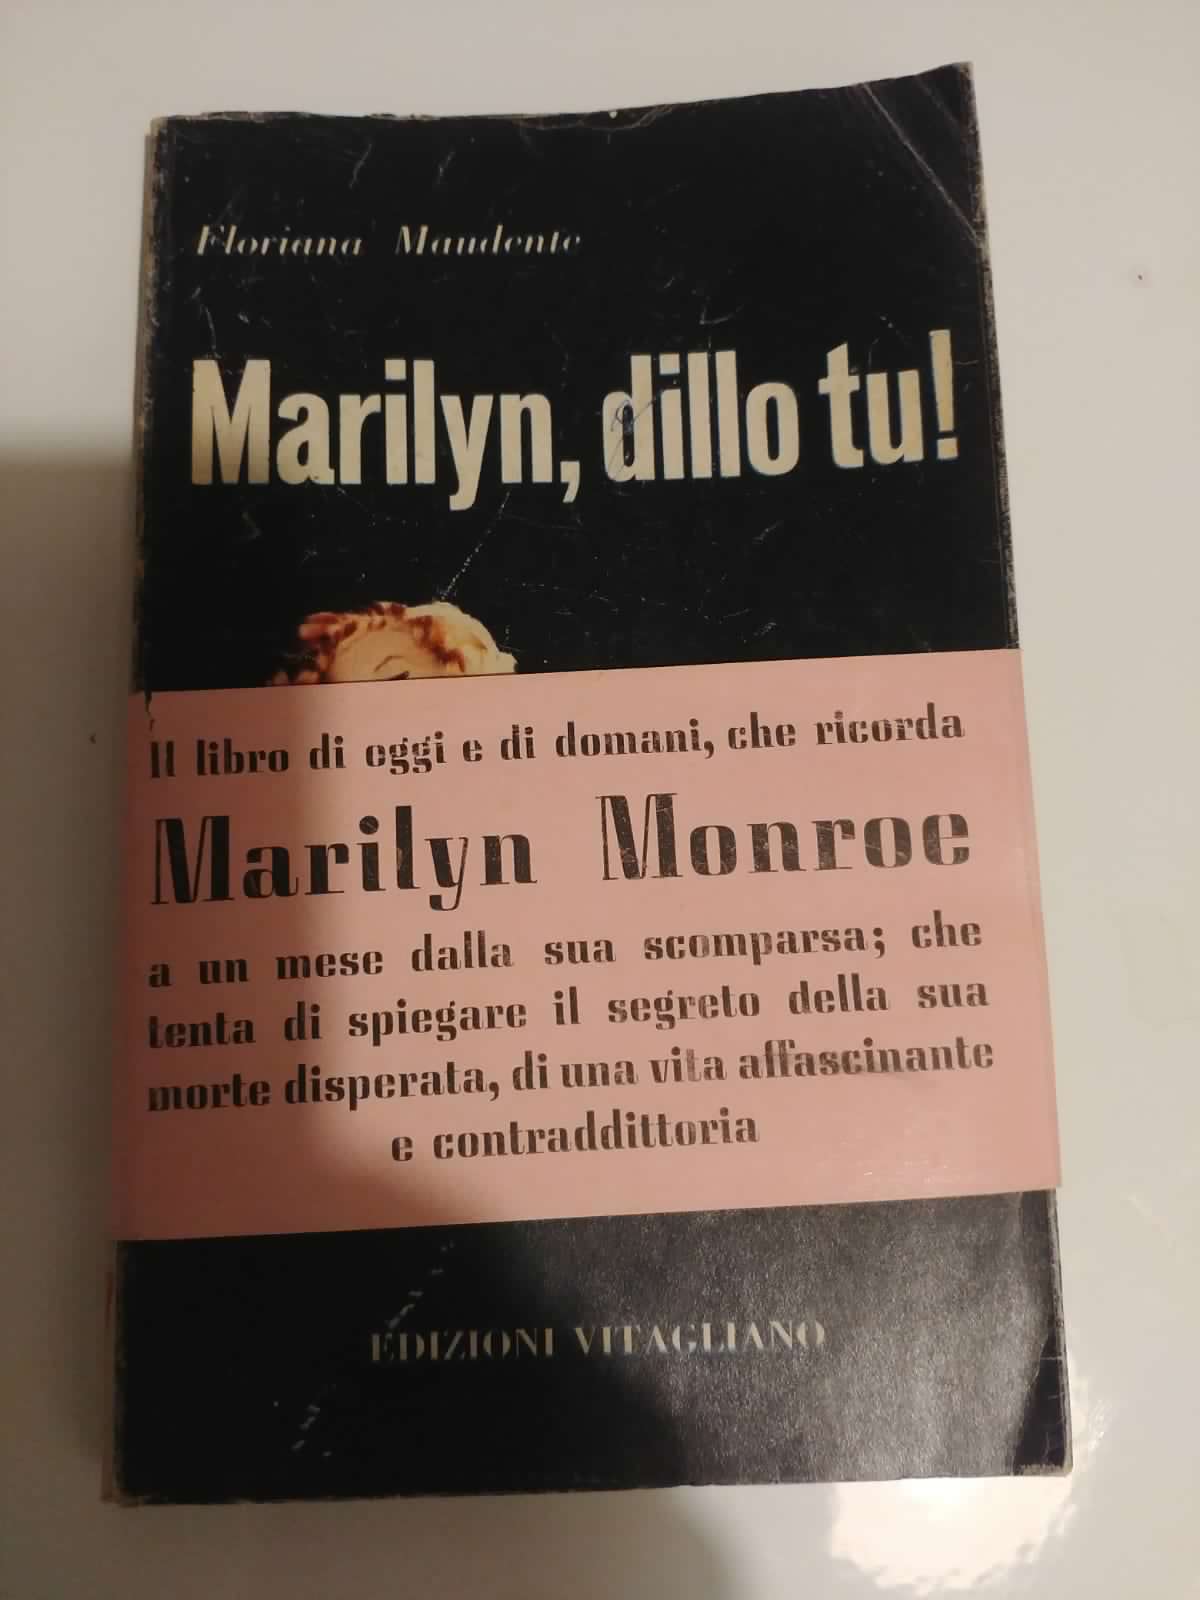 Non c’è dubbio: è proprio questo il primo libro uscito in Italia dopo la morte della diva Marilyn Monroe